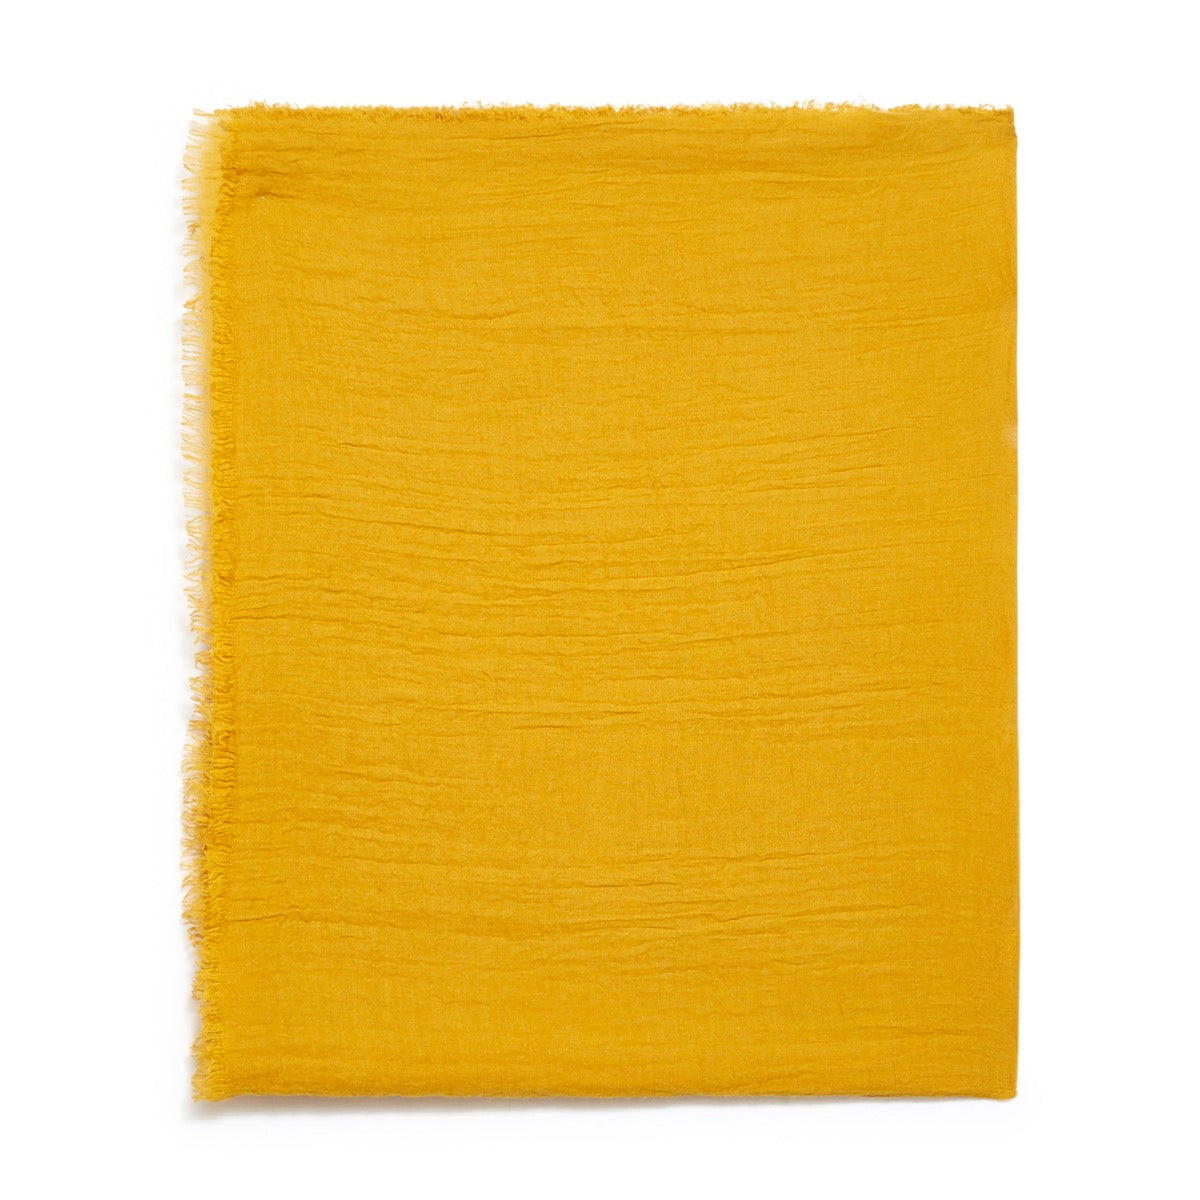 Echarpe unie - jaune moutarde